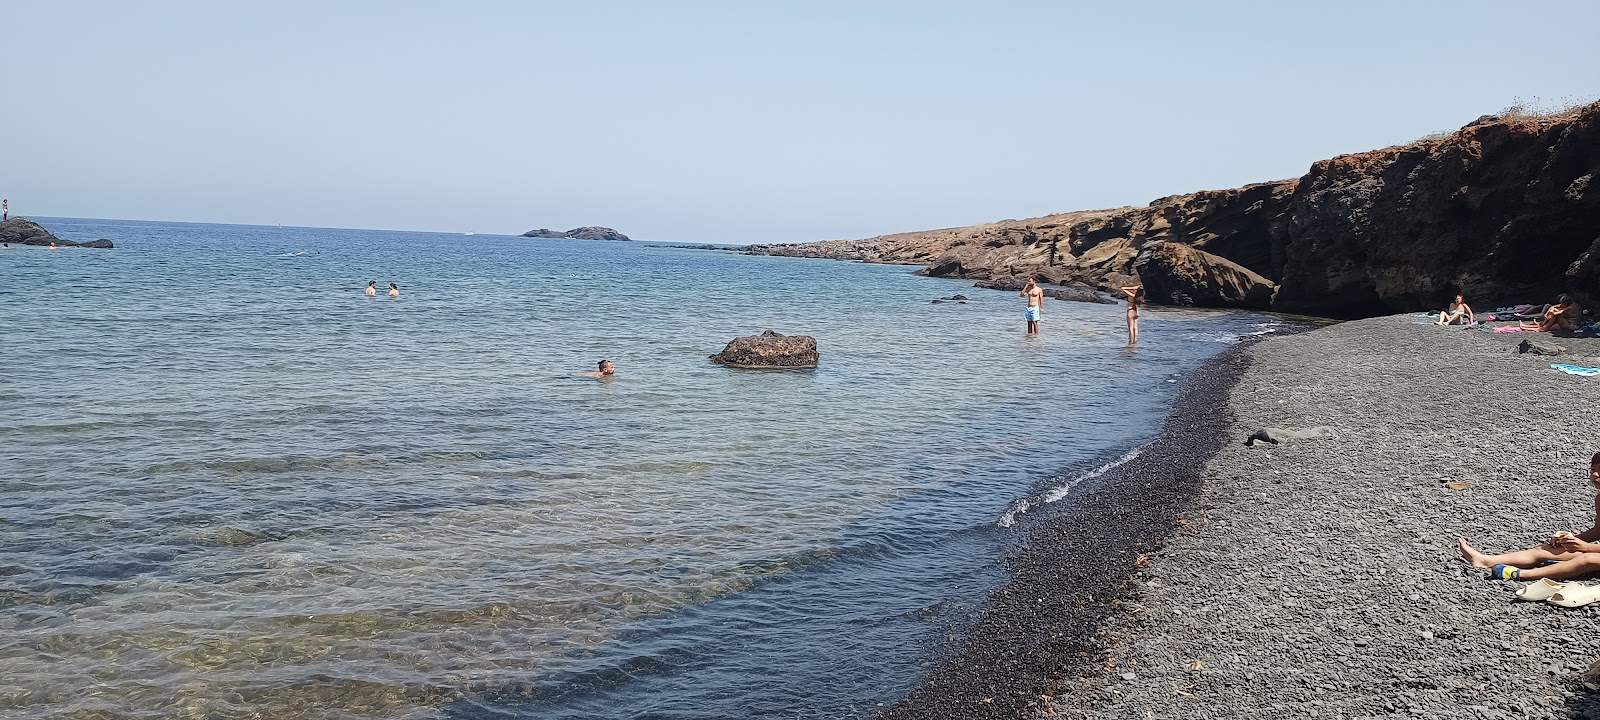 Cala Sidoti'in fotoğrafı geniş plaj ile birlikte